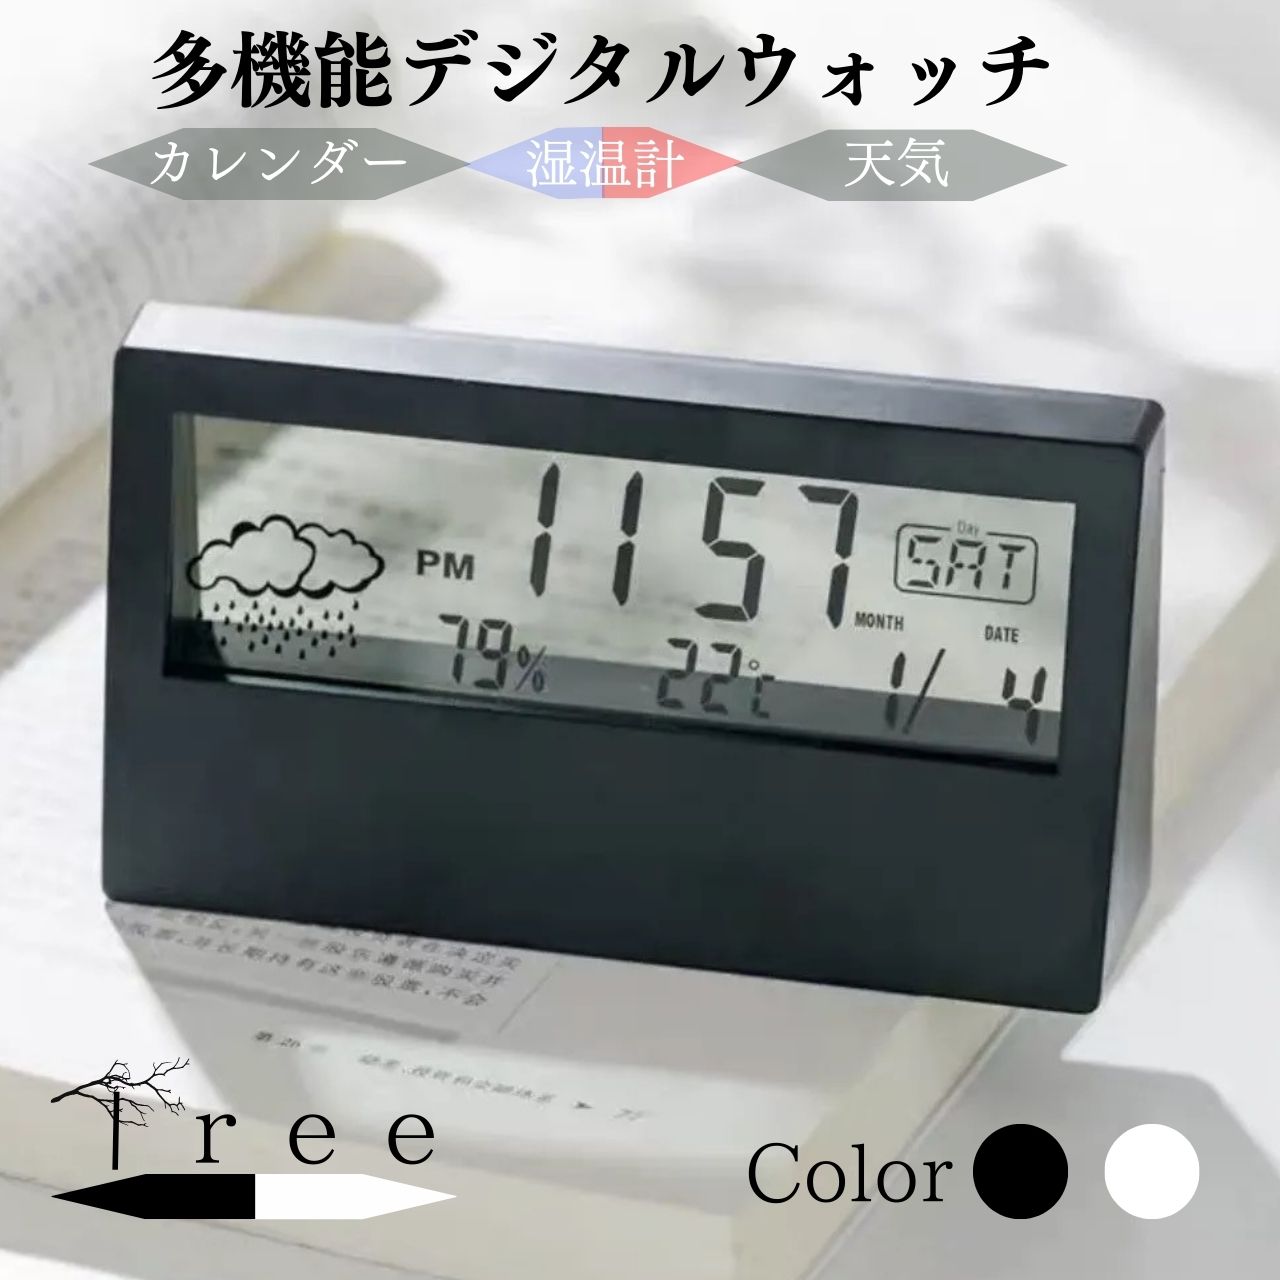 おしゃれな置き時計 ポイント2倍 置き時計 デジタル カレンダー 薄型 電池式 デジタル時計 湿度温度付き 置き時計 気温 コードレス おしゃれ ミニ デジタル目覚まし時計 アラームクロック めざまし時計 湿度 温度 卓上 リビング静音 母の日 父の日